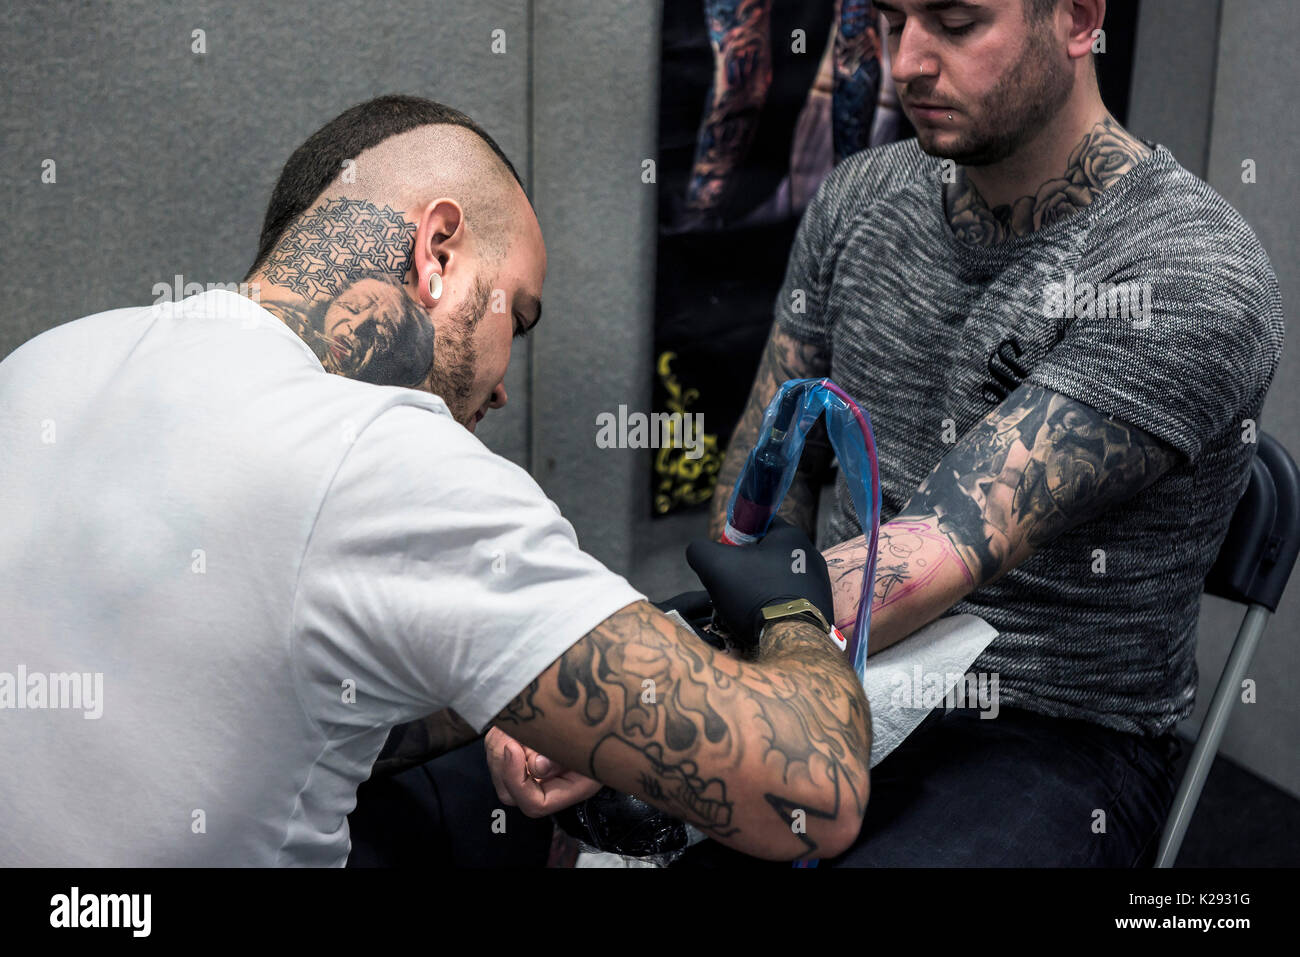 Cornwall Tattoo Convention - ein Tattoist Tätowierung der Unterarm eines Kunden bei der Cornwall Tattoo Convention. Stockfoto